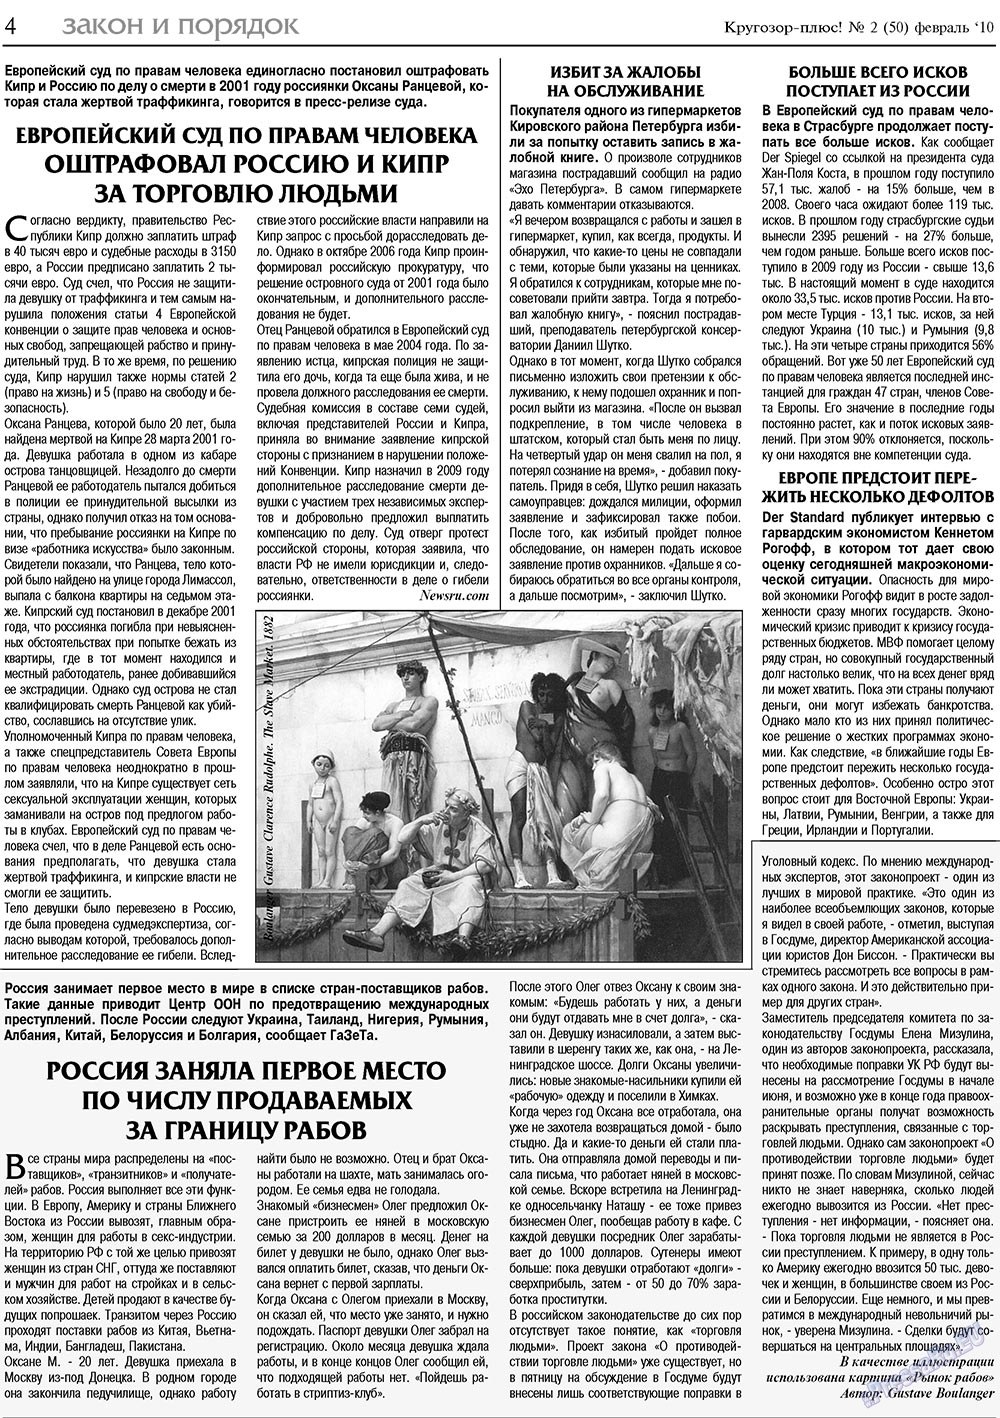 Кругозор плюс!, газета. 2010 №2 стр.4